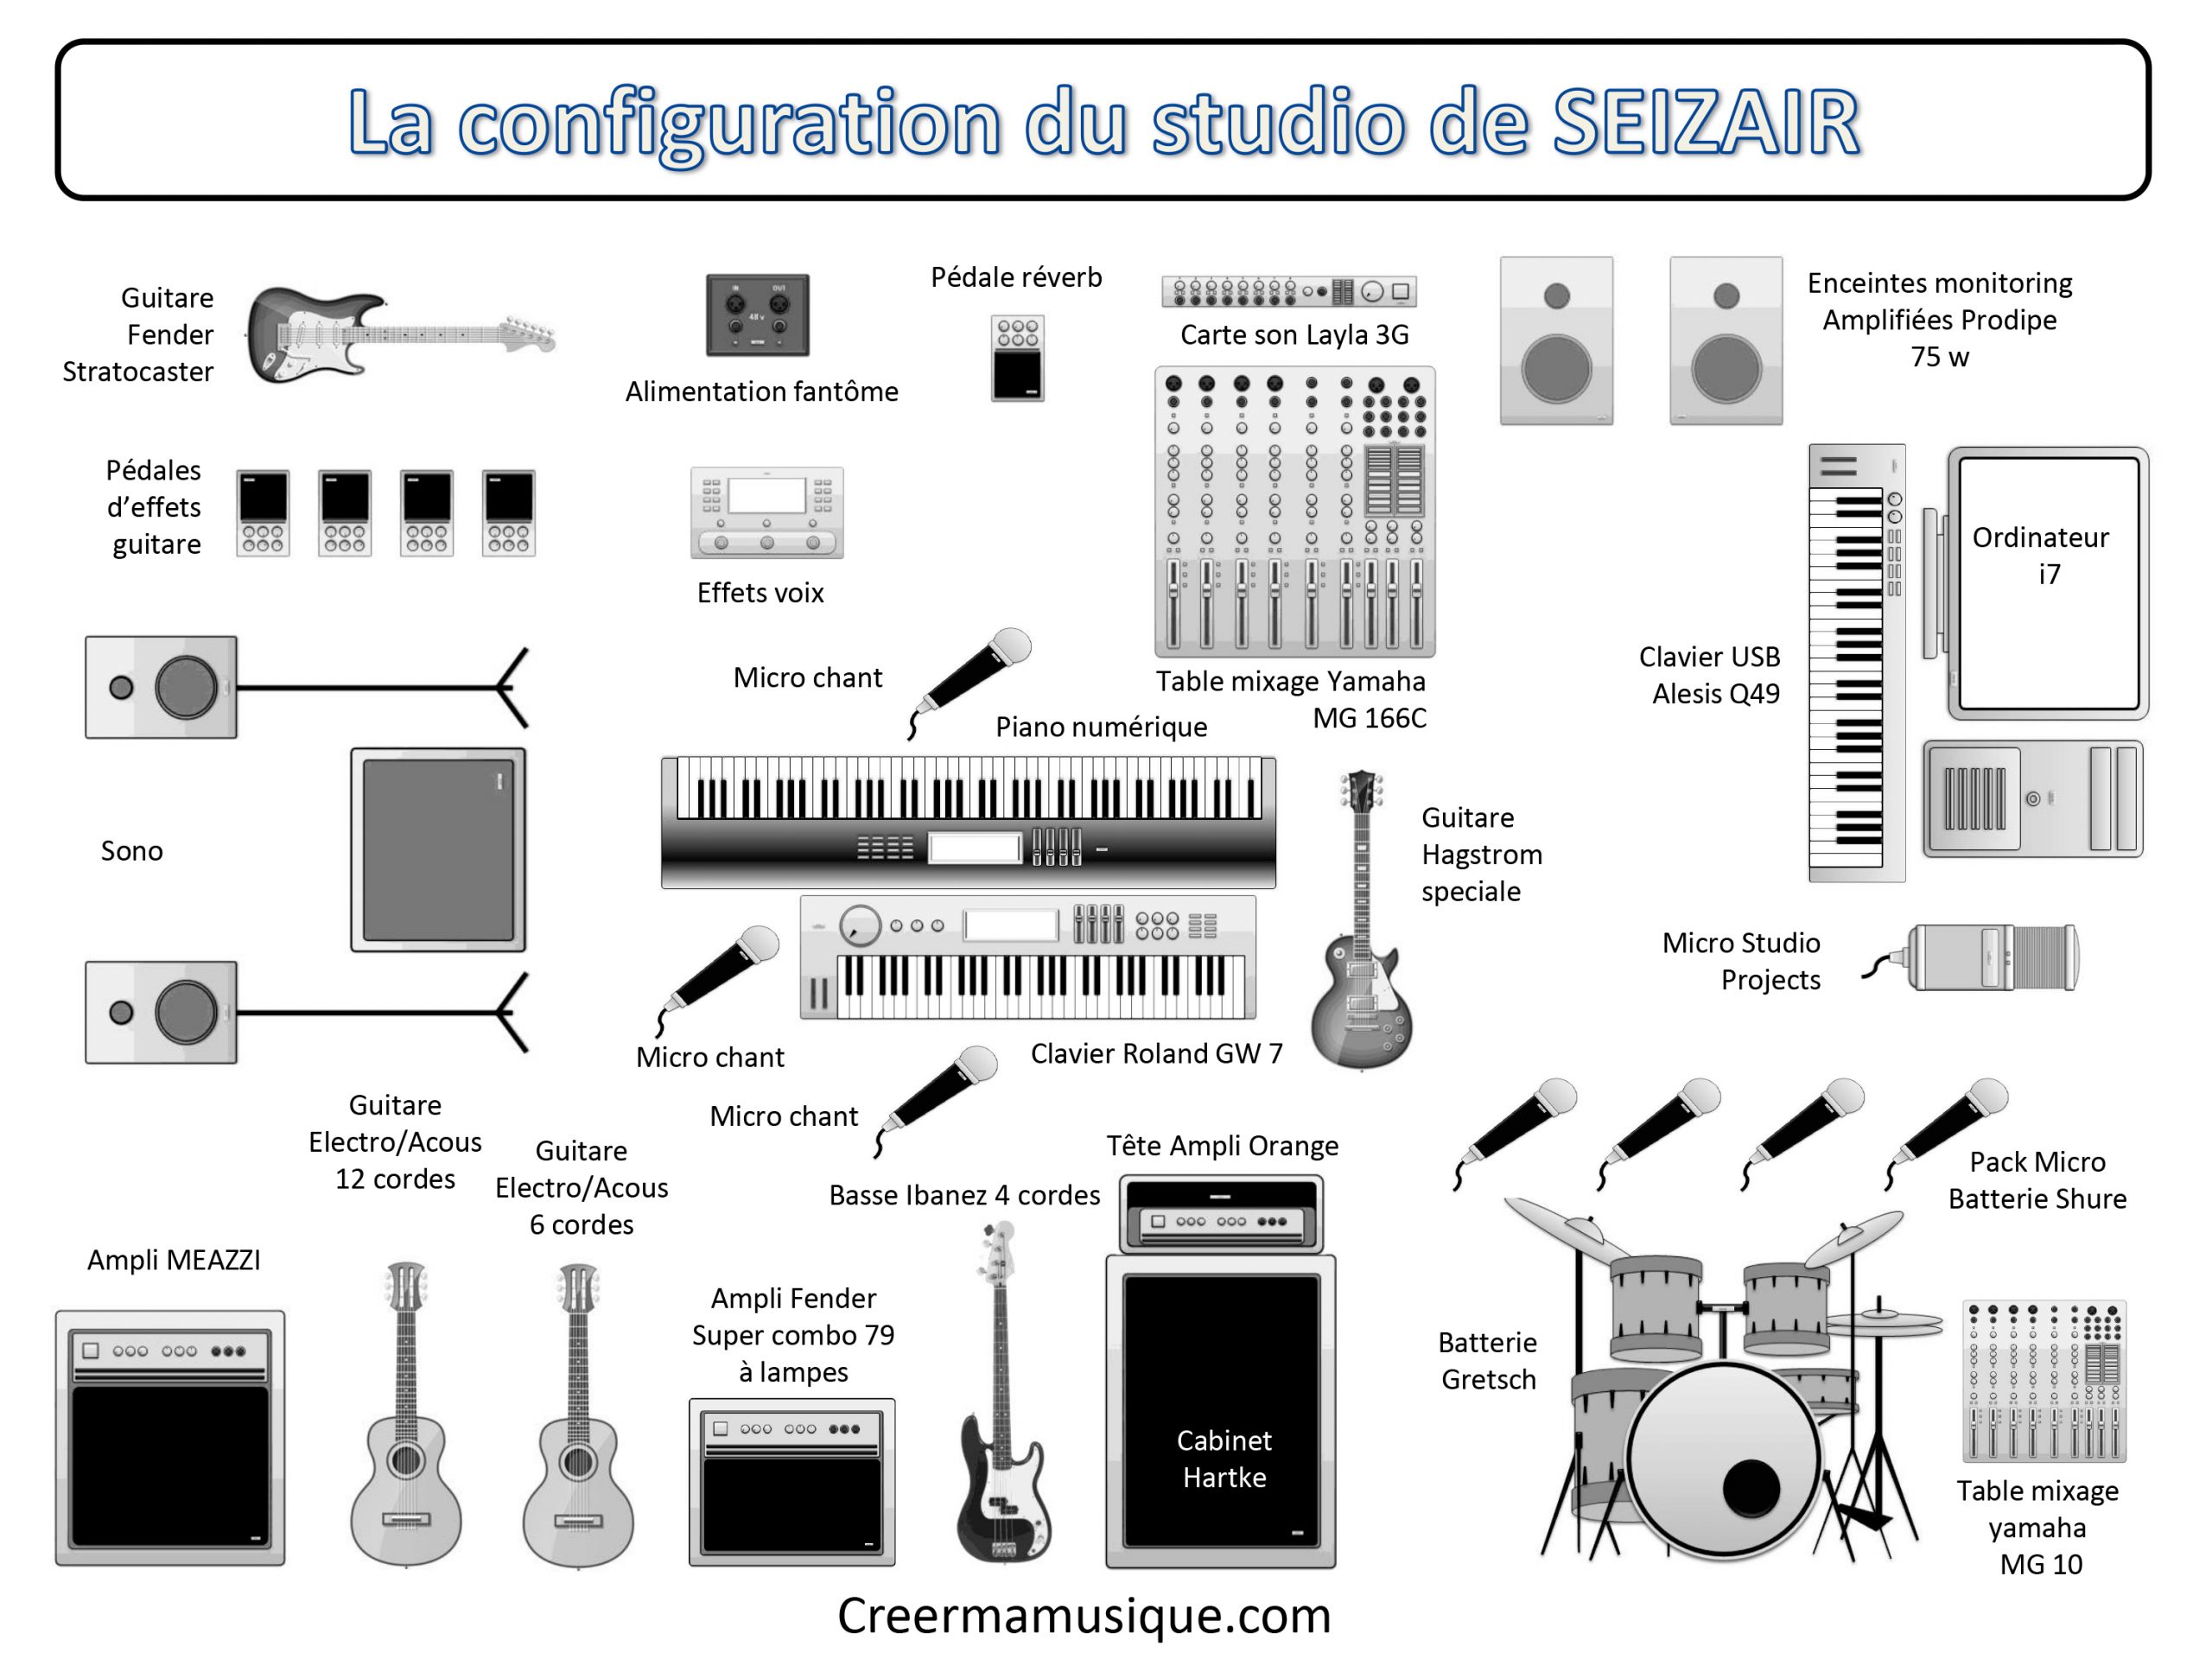 La configuration matérielle du studio de Seizair en image et en texte